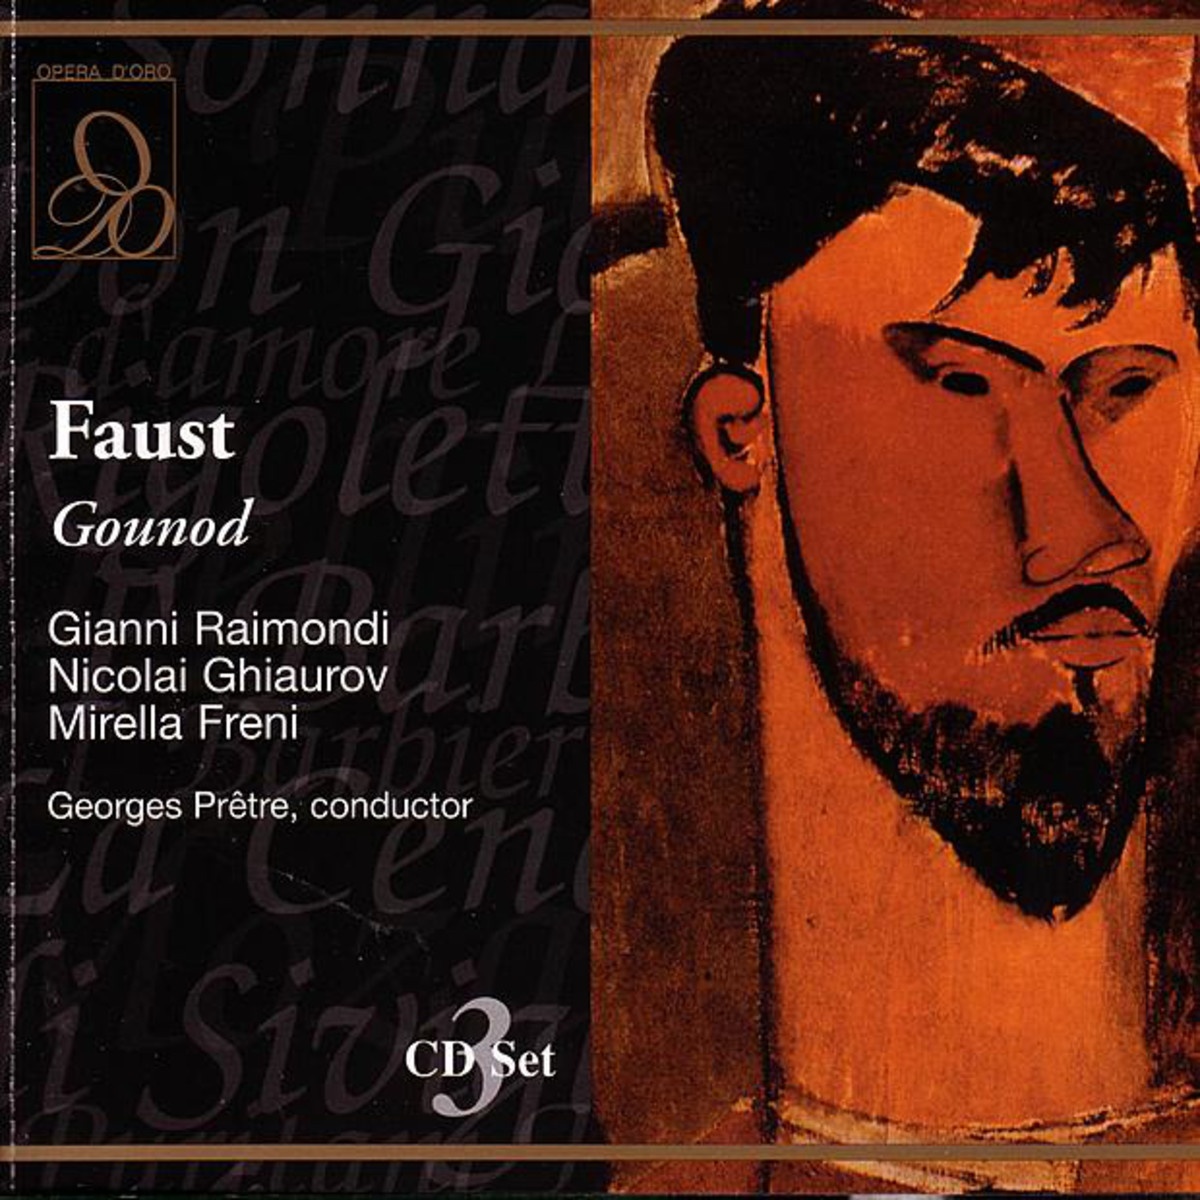 Faust 1986 Digital Remaster, Act I: Mais, ce Dieu que peutil pour moi? ... Me voici! Faust Me phistophe le s